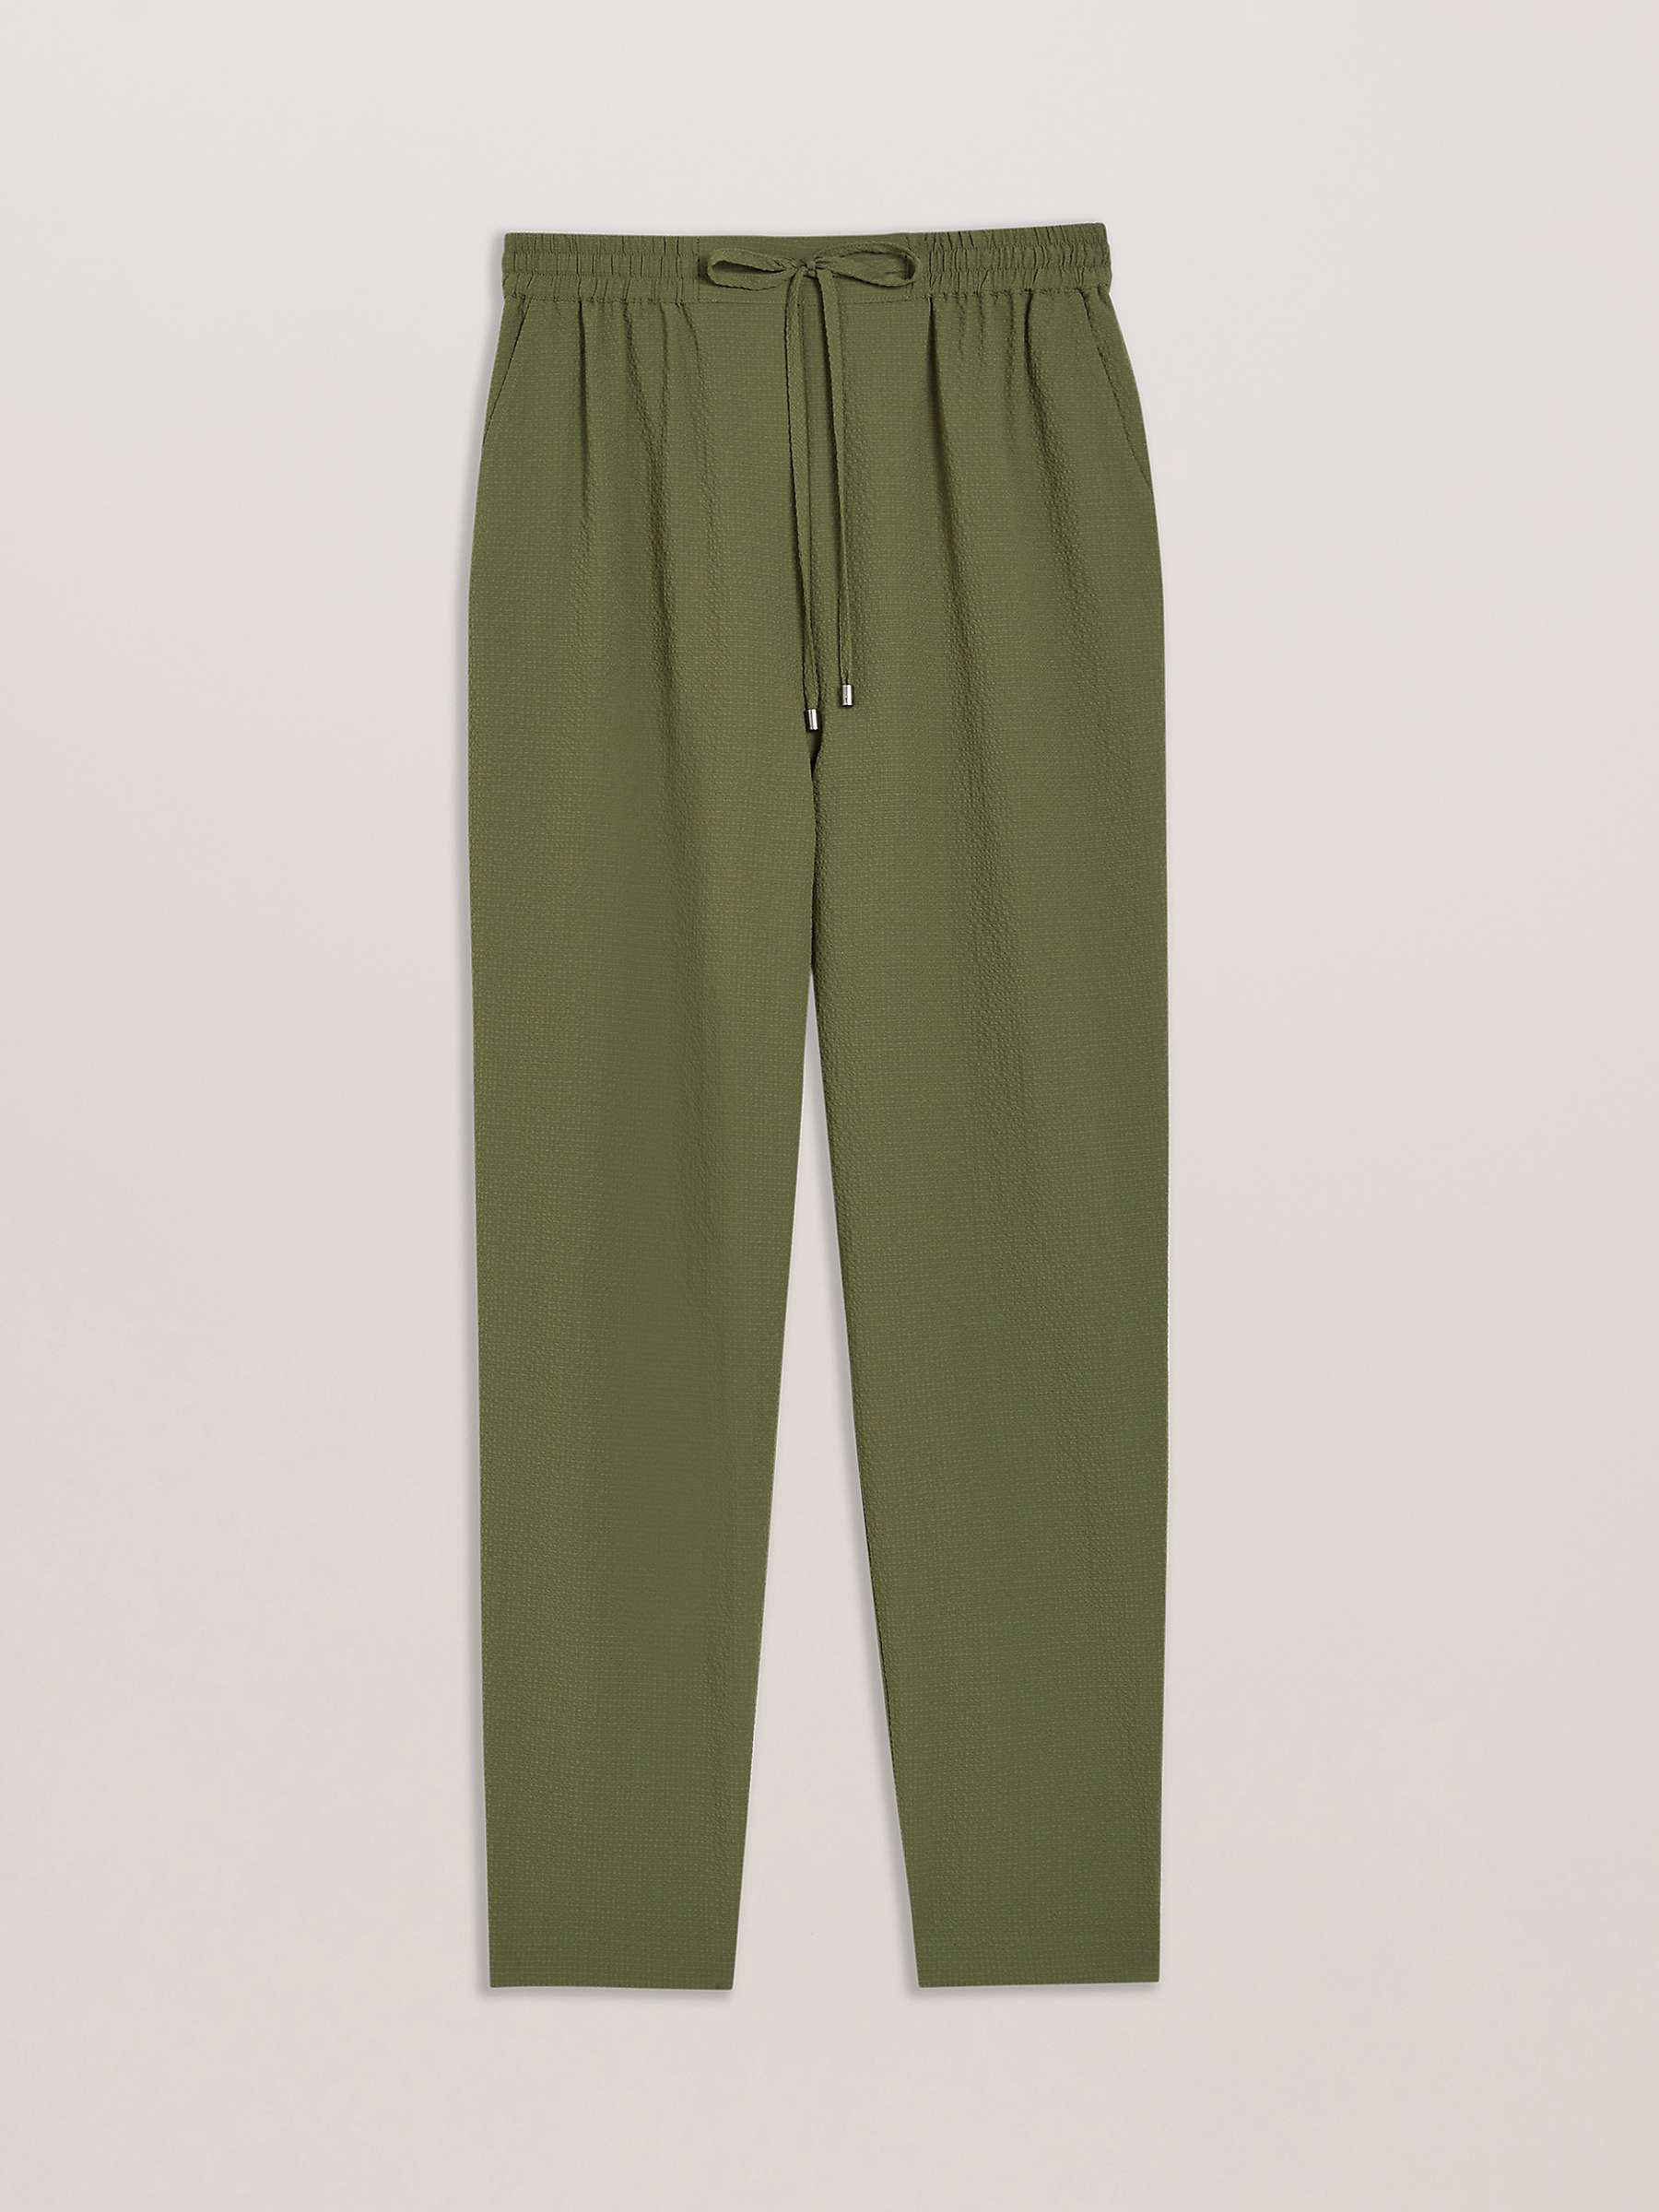 Buy Ted Baker Morasco Ankle Grazer Trousers, Green Khaki Online at johnlewis.com